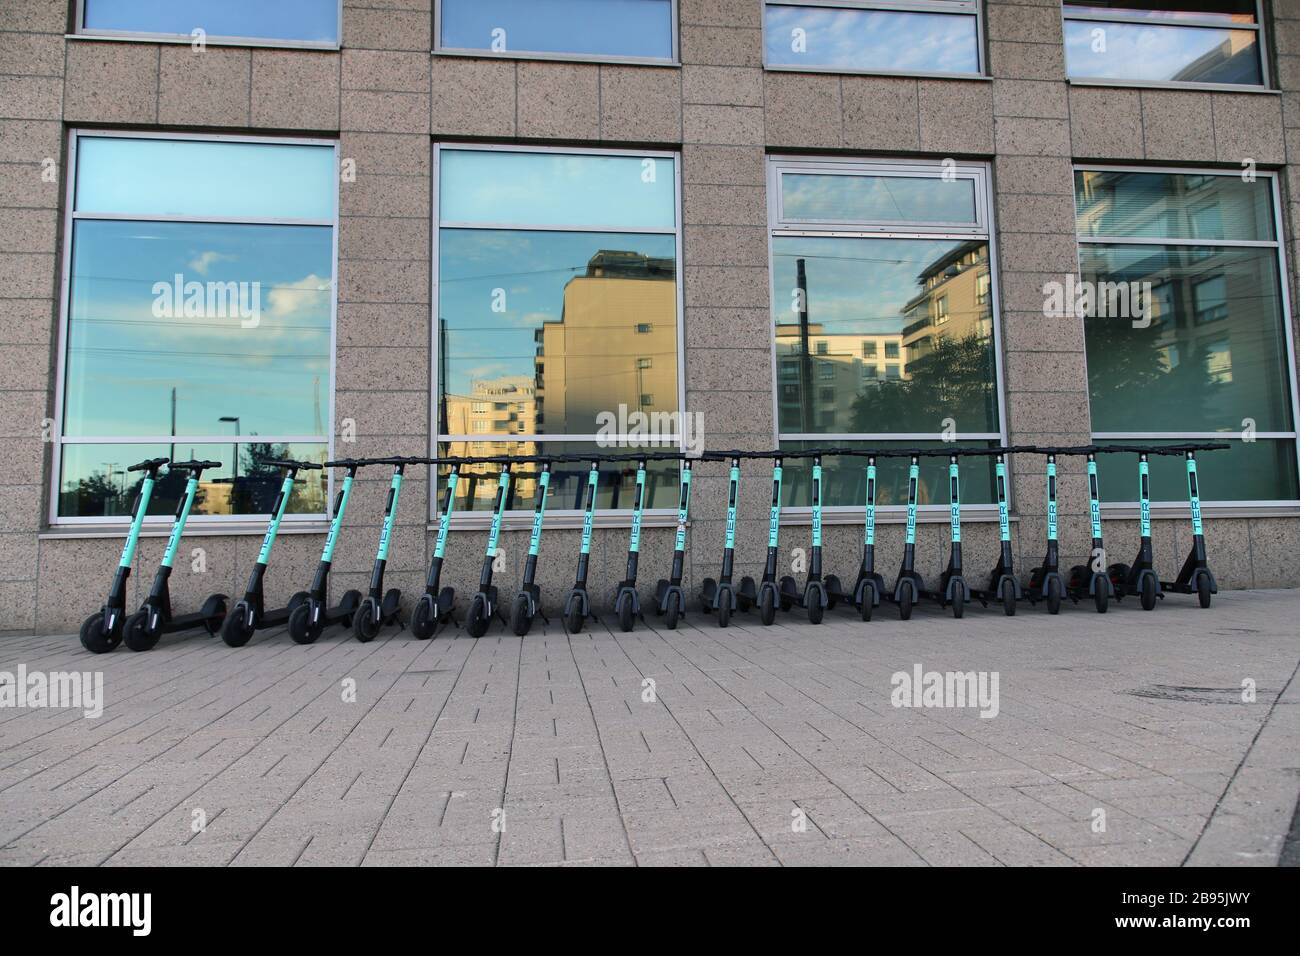 Viele Roller von Tier Electric Verleih wurden während eines sonnigen Sommertags im städtischen Stadtzentrum von Helsinki fotografiert. Trendige Art zu bewegen. Helsinki, FI Stockfoto